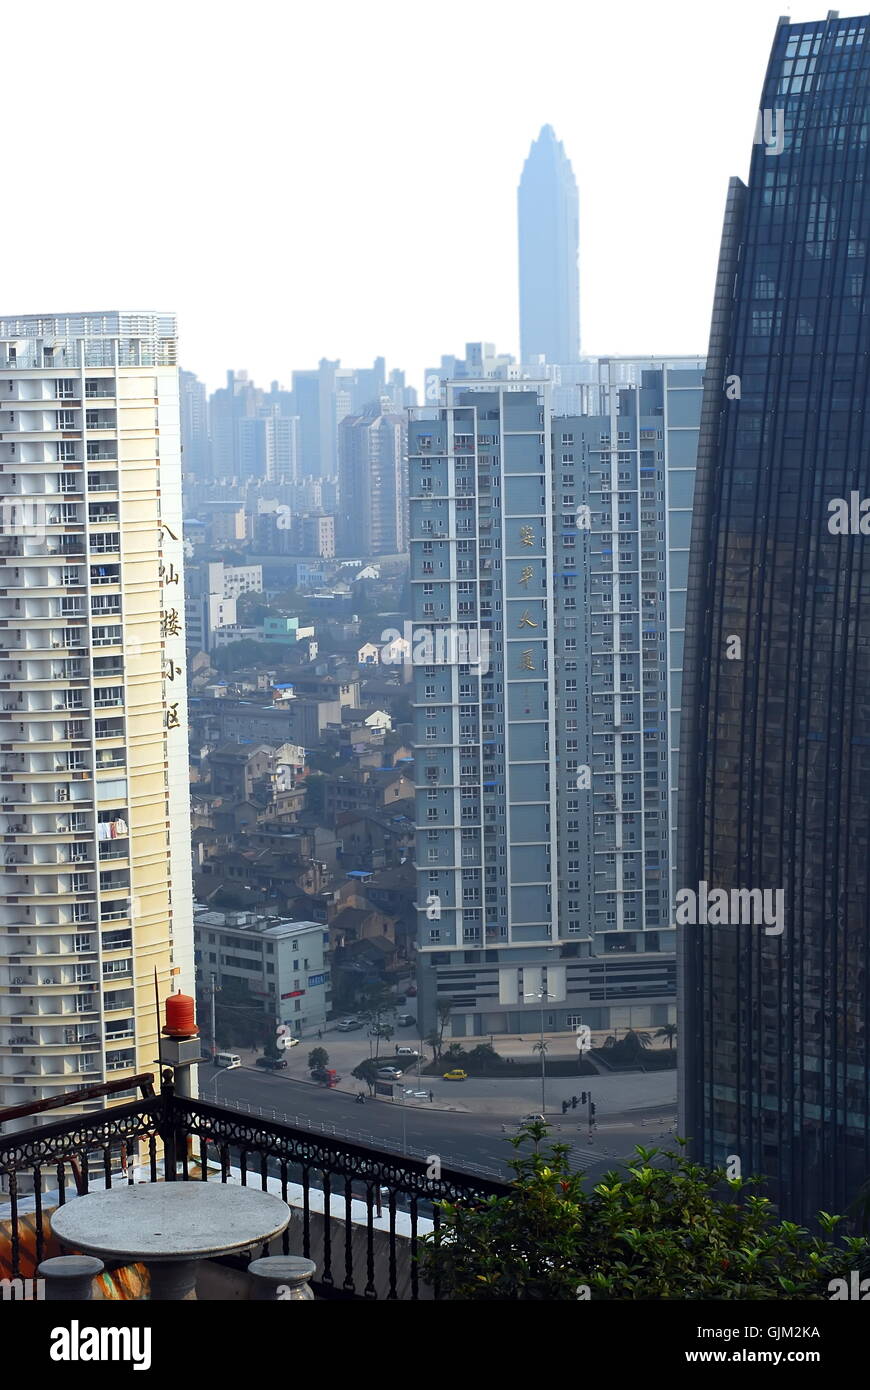 Développement d'une petite ville de Chine - Nouveaux bâtiments Banque D'Images